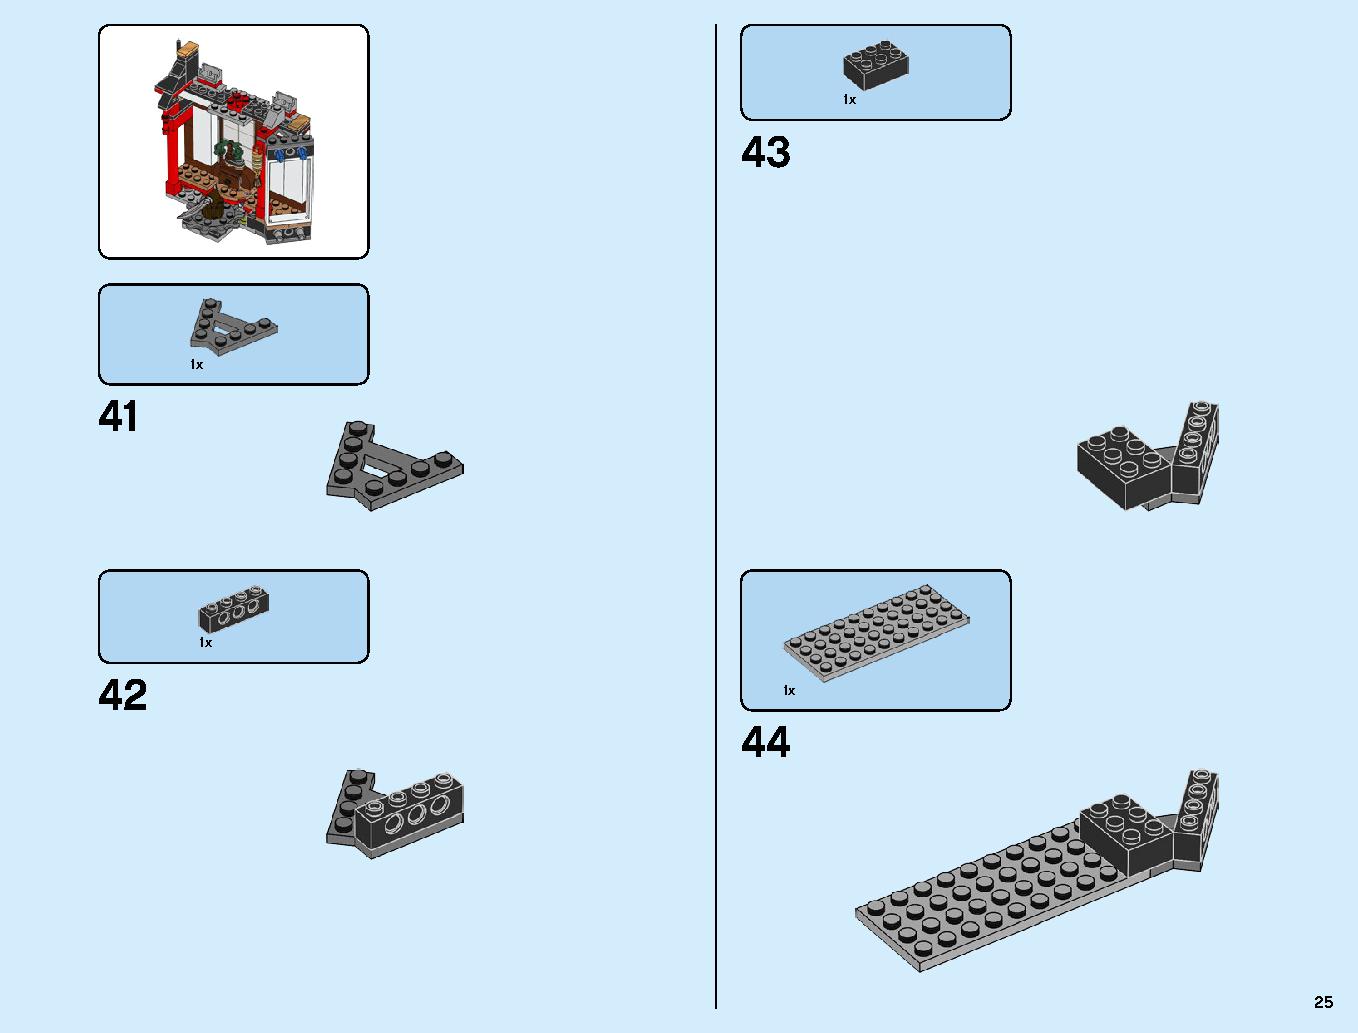 ニンジャ道場 70670 レゴの商品情報 レゴの説明書・組立方法 25 page